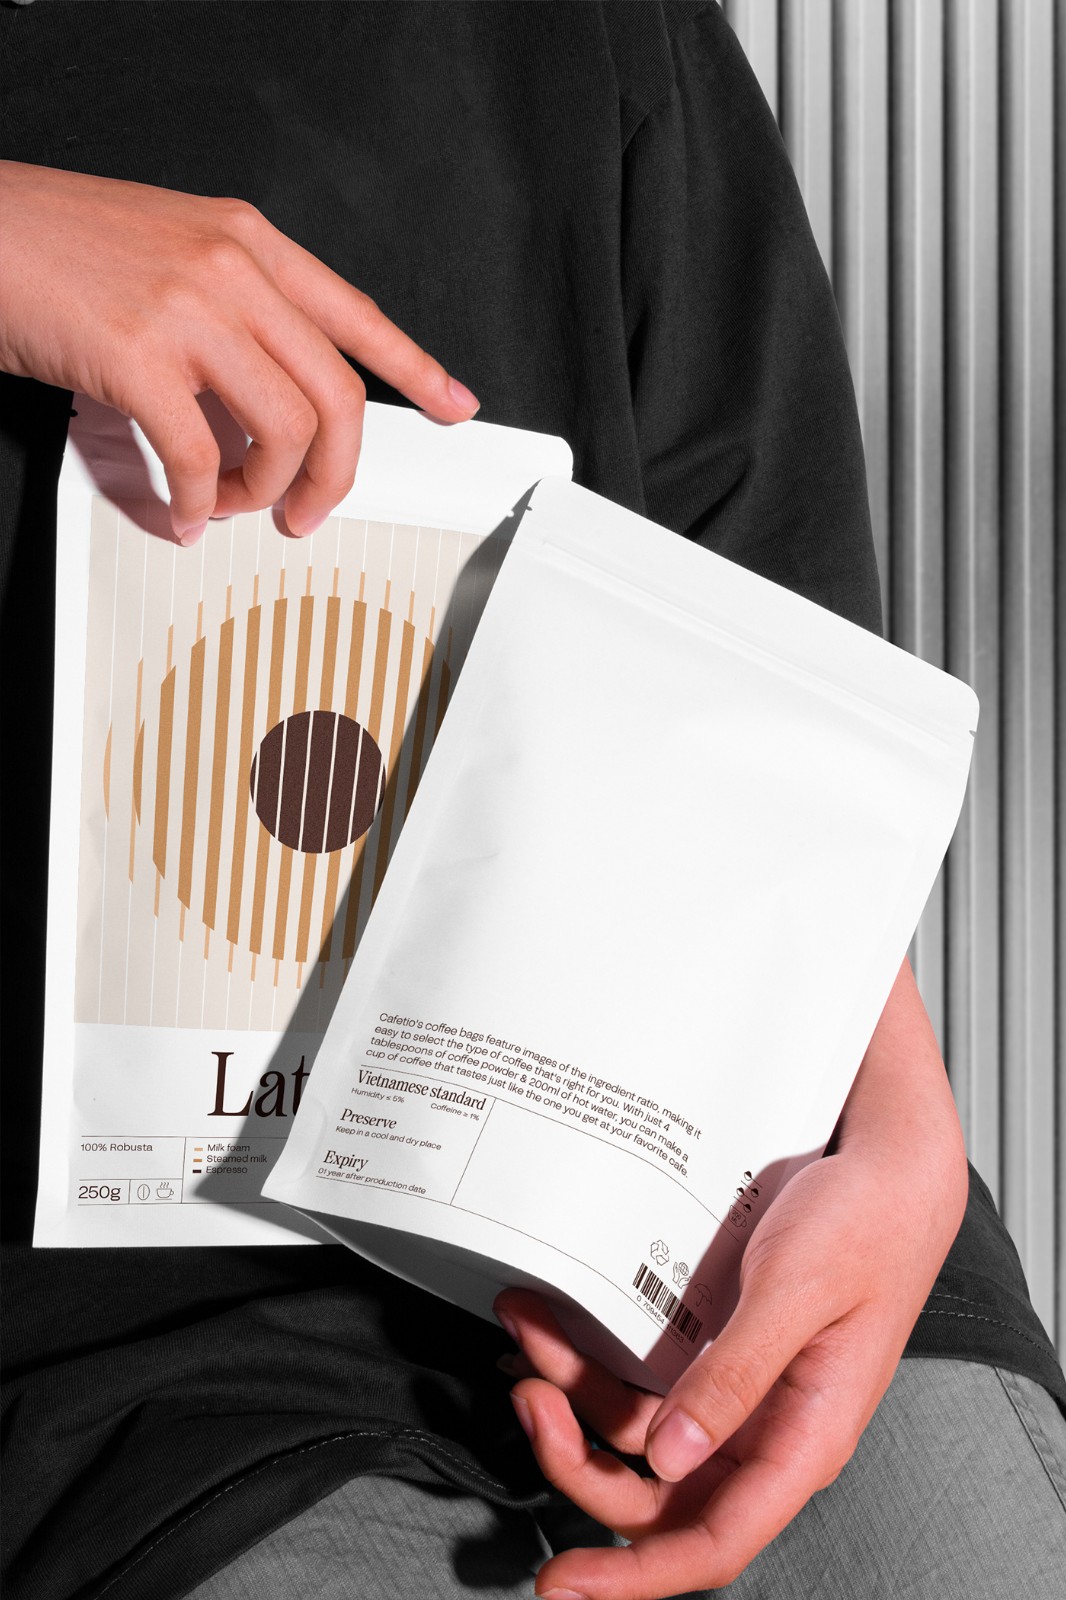 极简咖啡包装设计案例赏析 